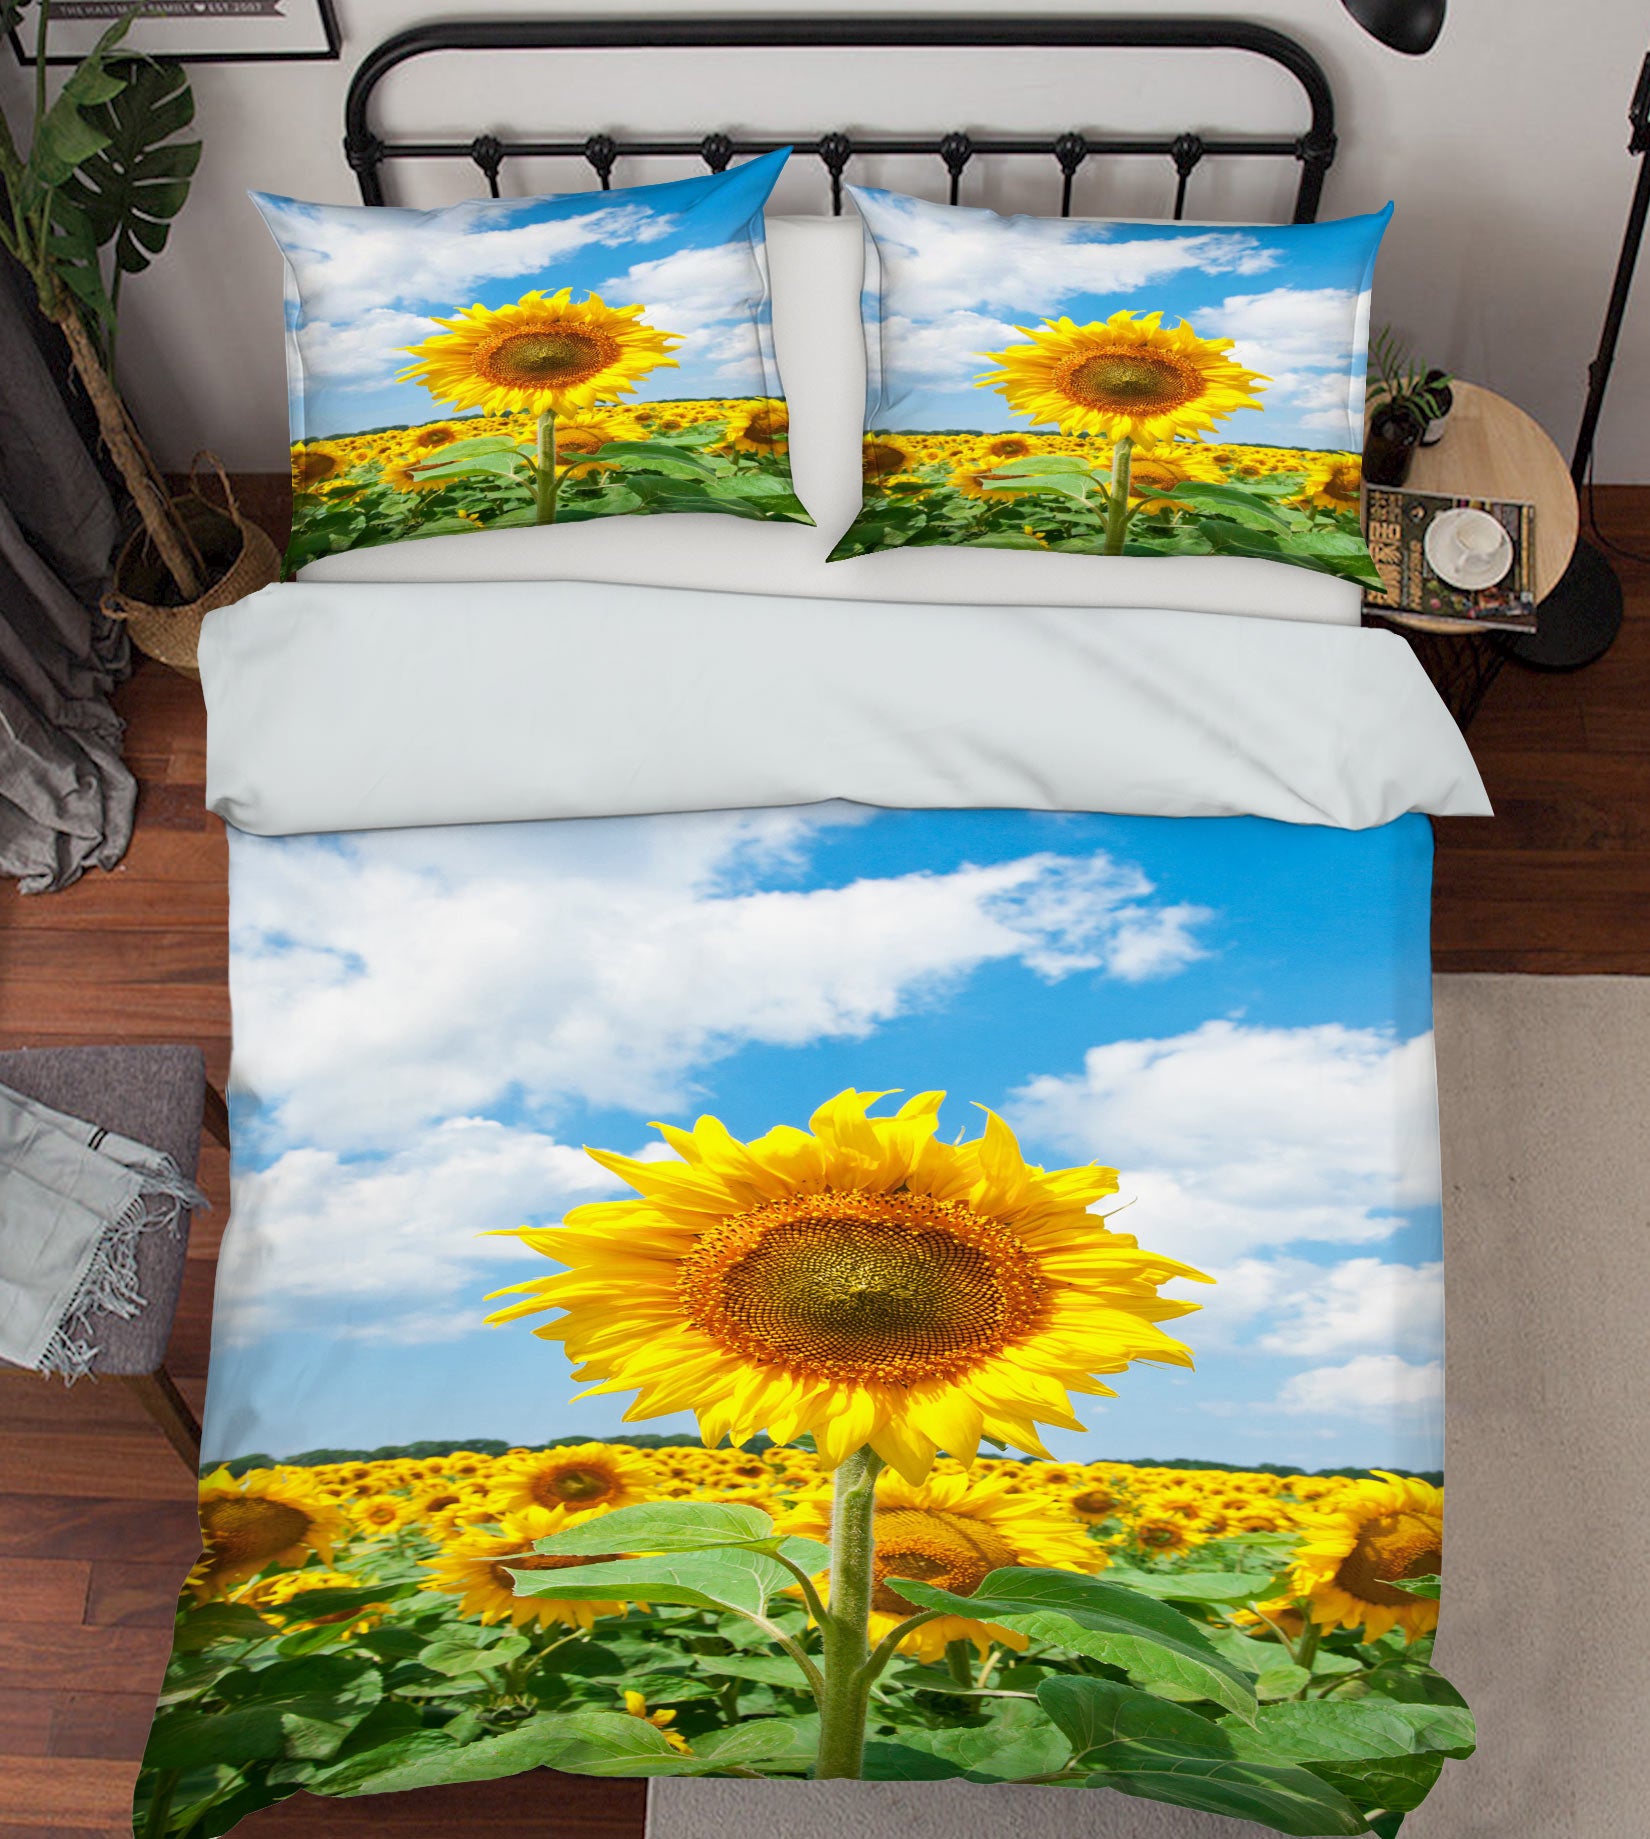 3D Sunflower 67155 Bed Pillowcases Quilt